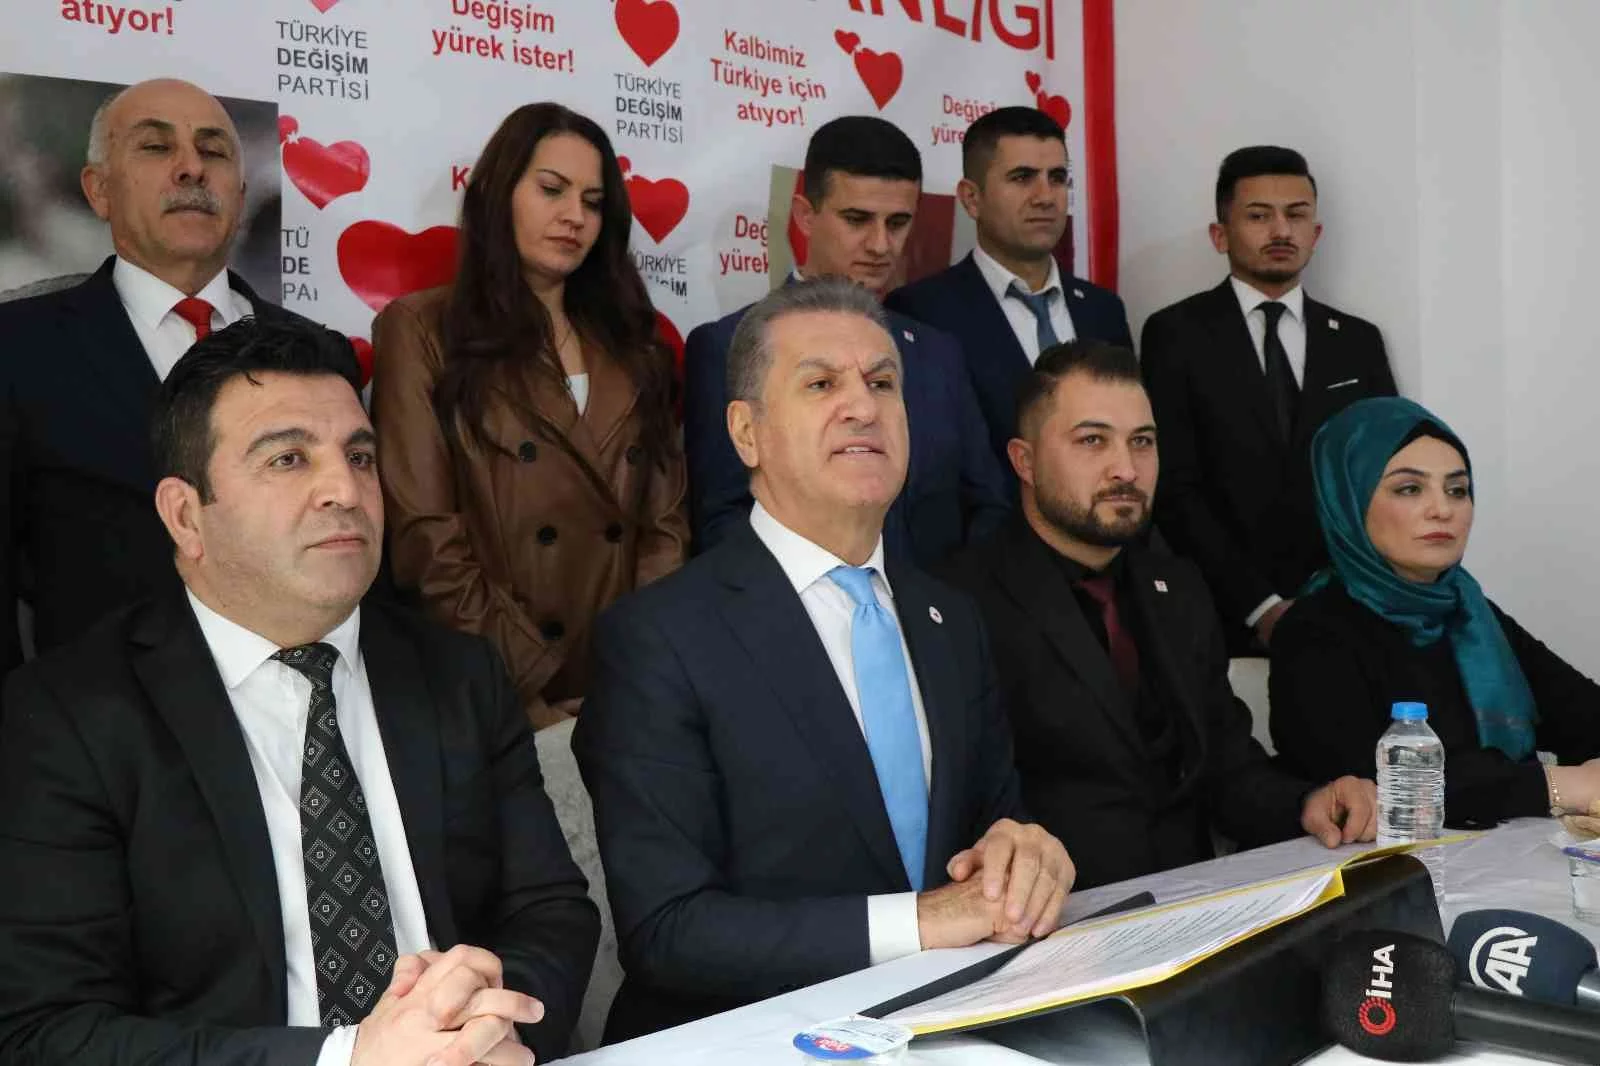 TDP Lideri Mustafa Sarıgül: “Keşke altılı masa 28 Şubat Darbesini de konuşsaydı”